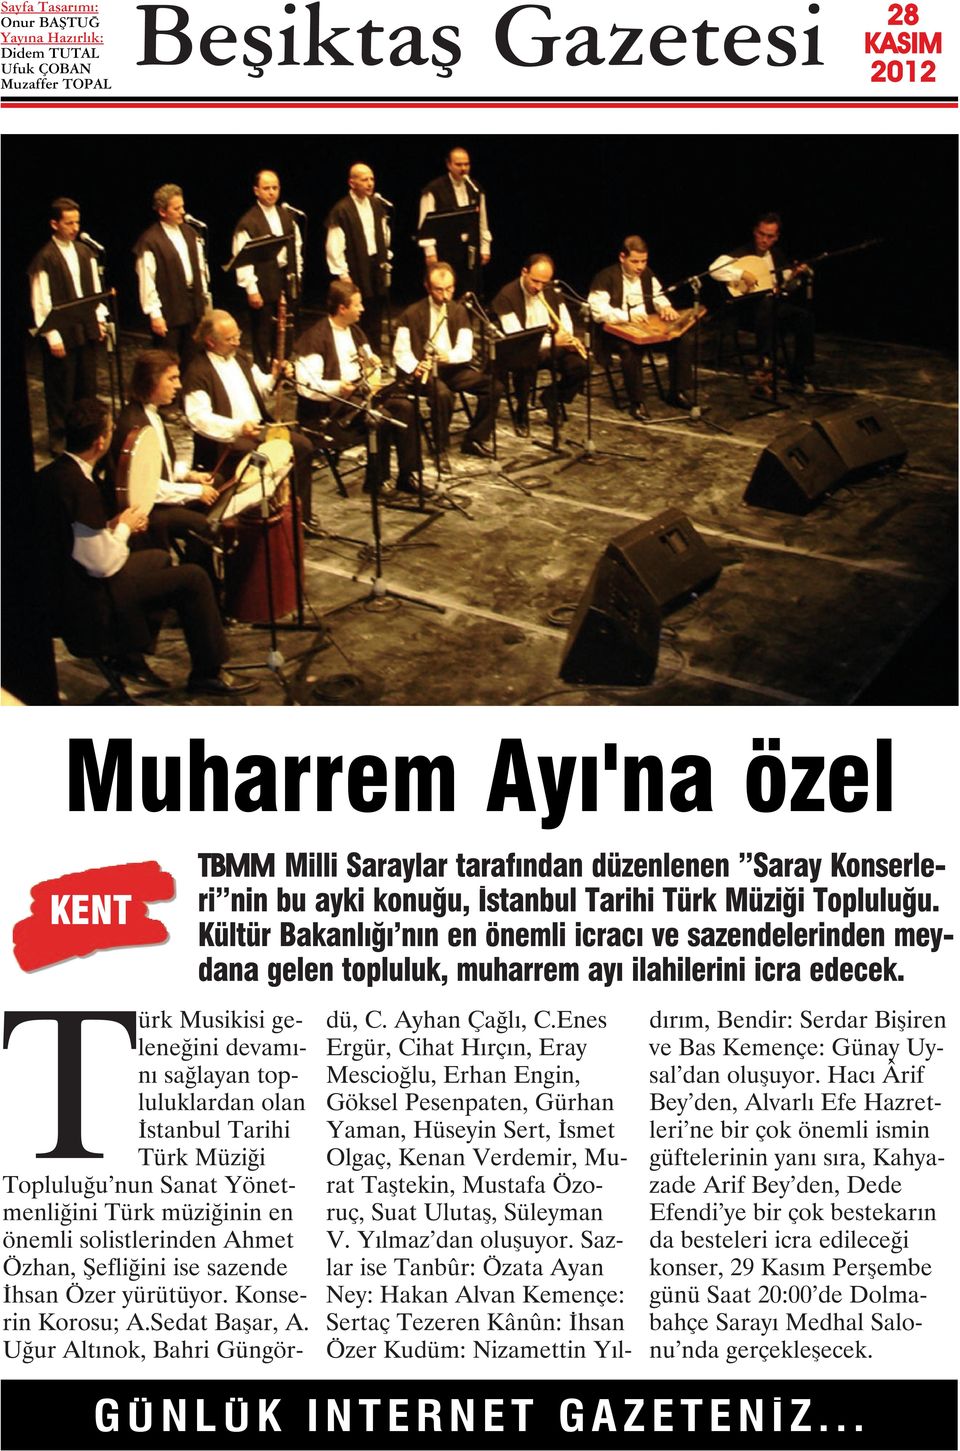 Türk Musikisi geleneğini devamını sağlayan topluluklardan olan İstanbul Tarihi Türk Müziği Topluluğu nun Sanat Yönetmenliğini Türk müziğinin en önemli solistlerinden Ahmet Özhan, Şefliğini ise